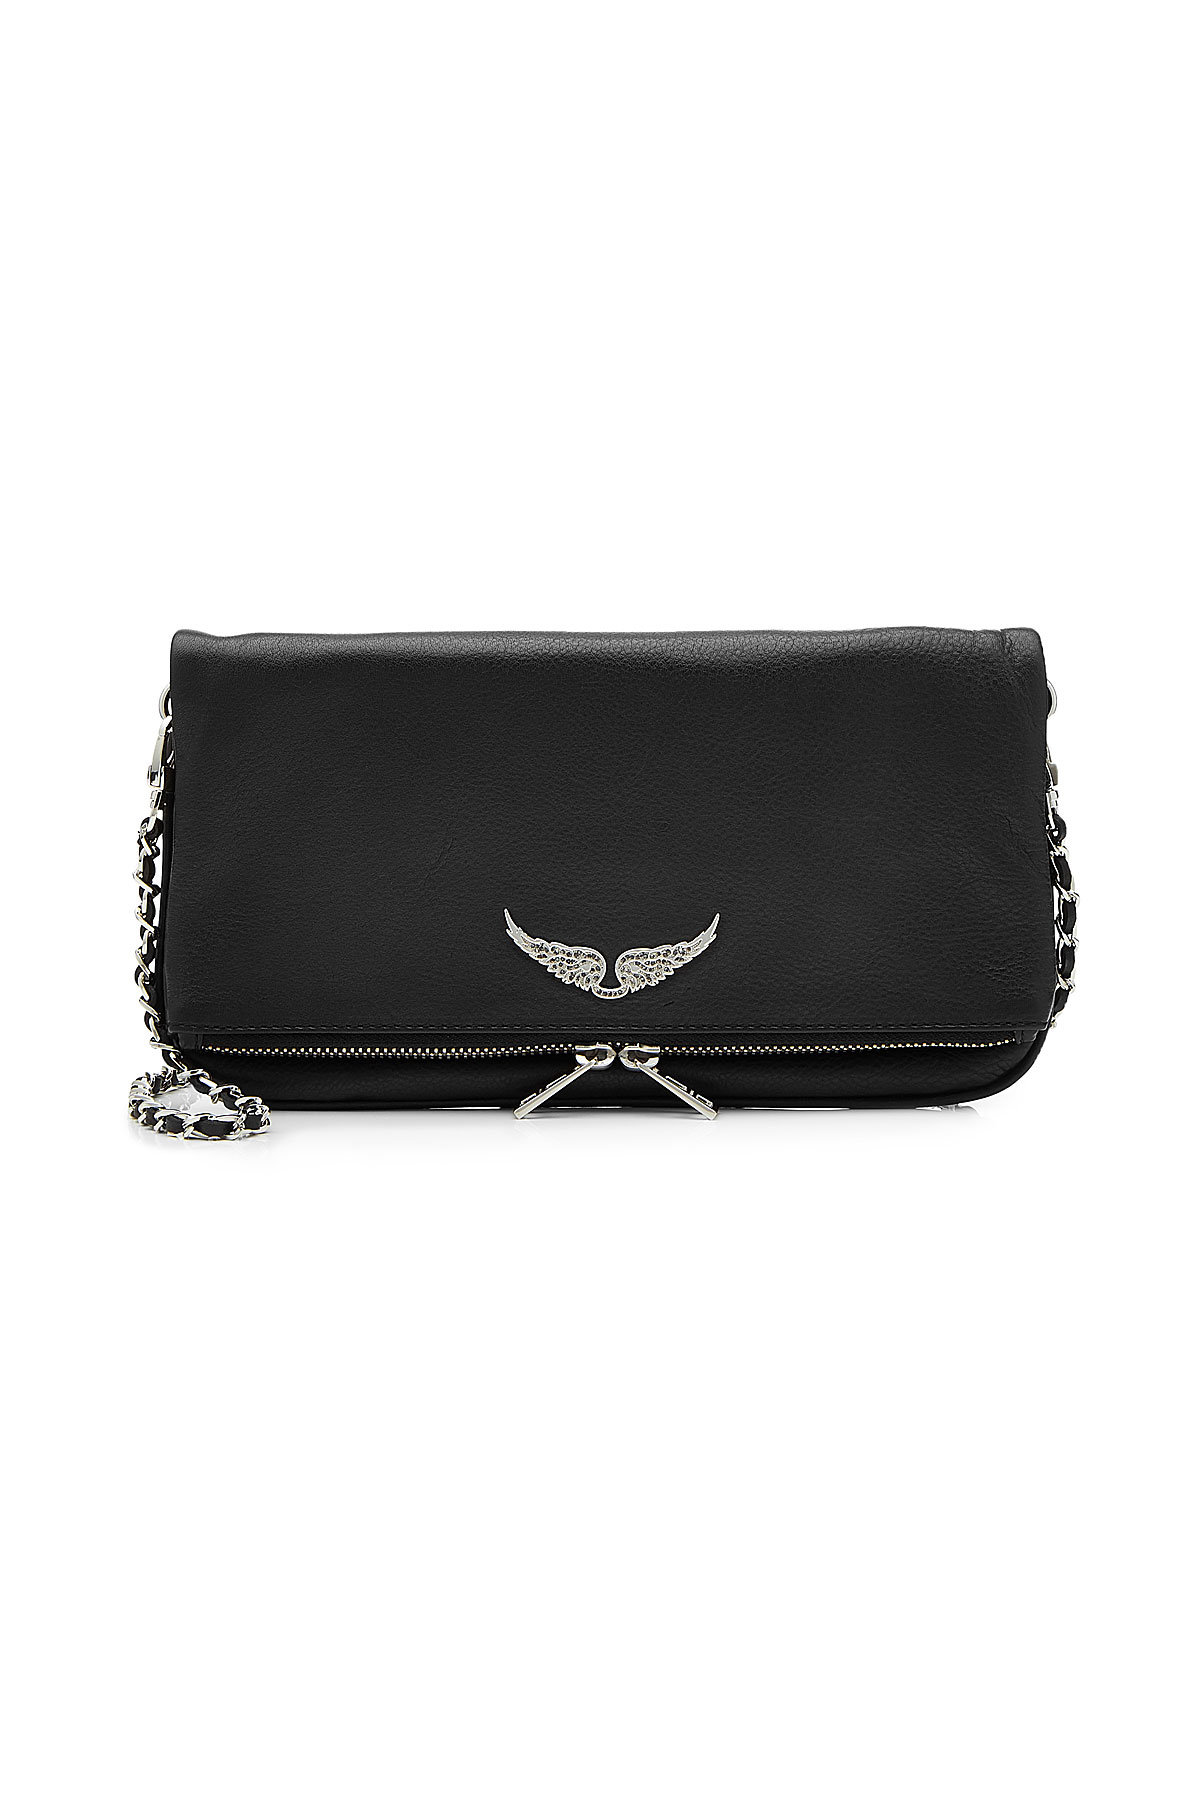 Zadig & Voltaire - Rock Leather Shoulder Bag